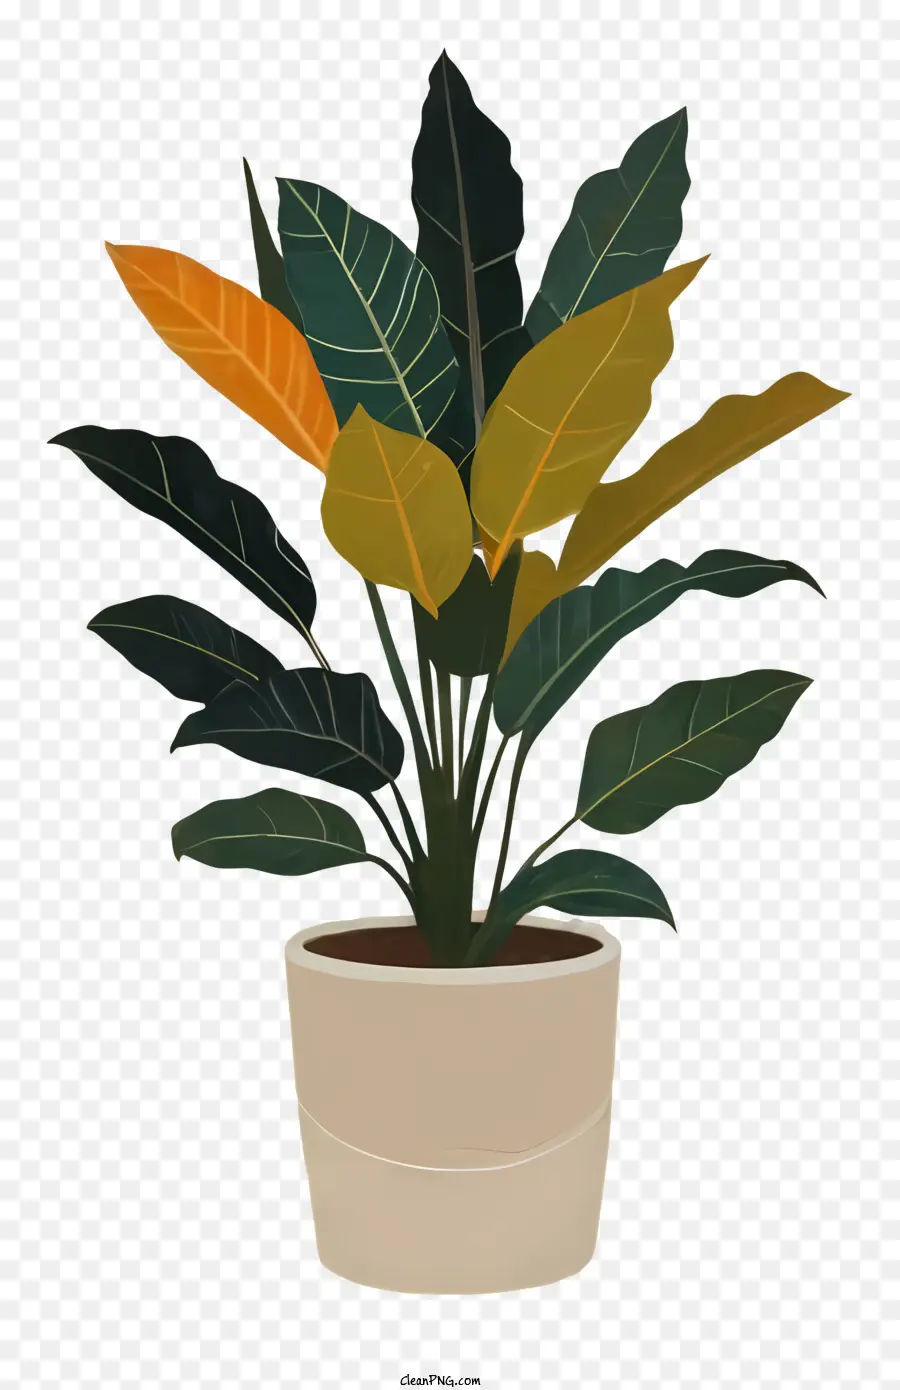 Topfpflanze grüne Blätter gelbe Blätter kreisförmiger Muster Anbau Pflanze - Farbenfrohe Topfpflanze mit sichtbaren Wurzeln